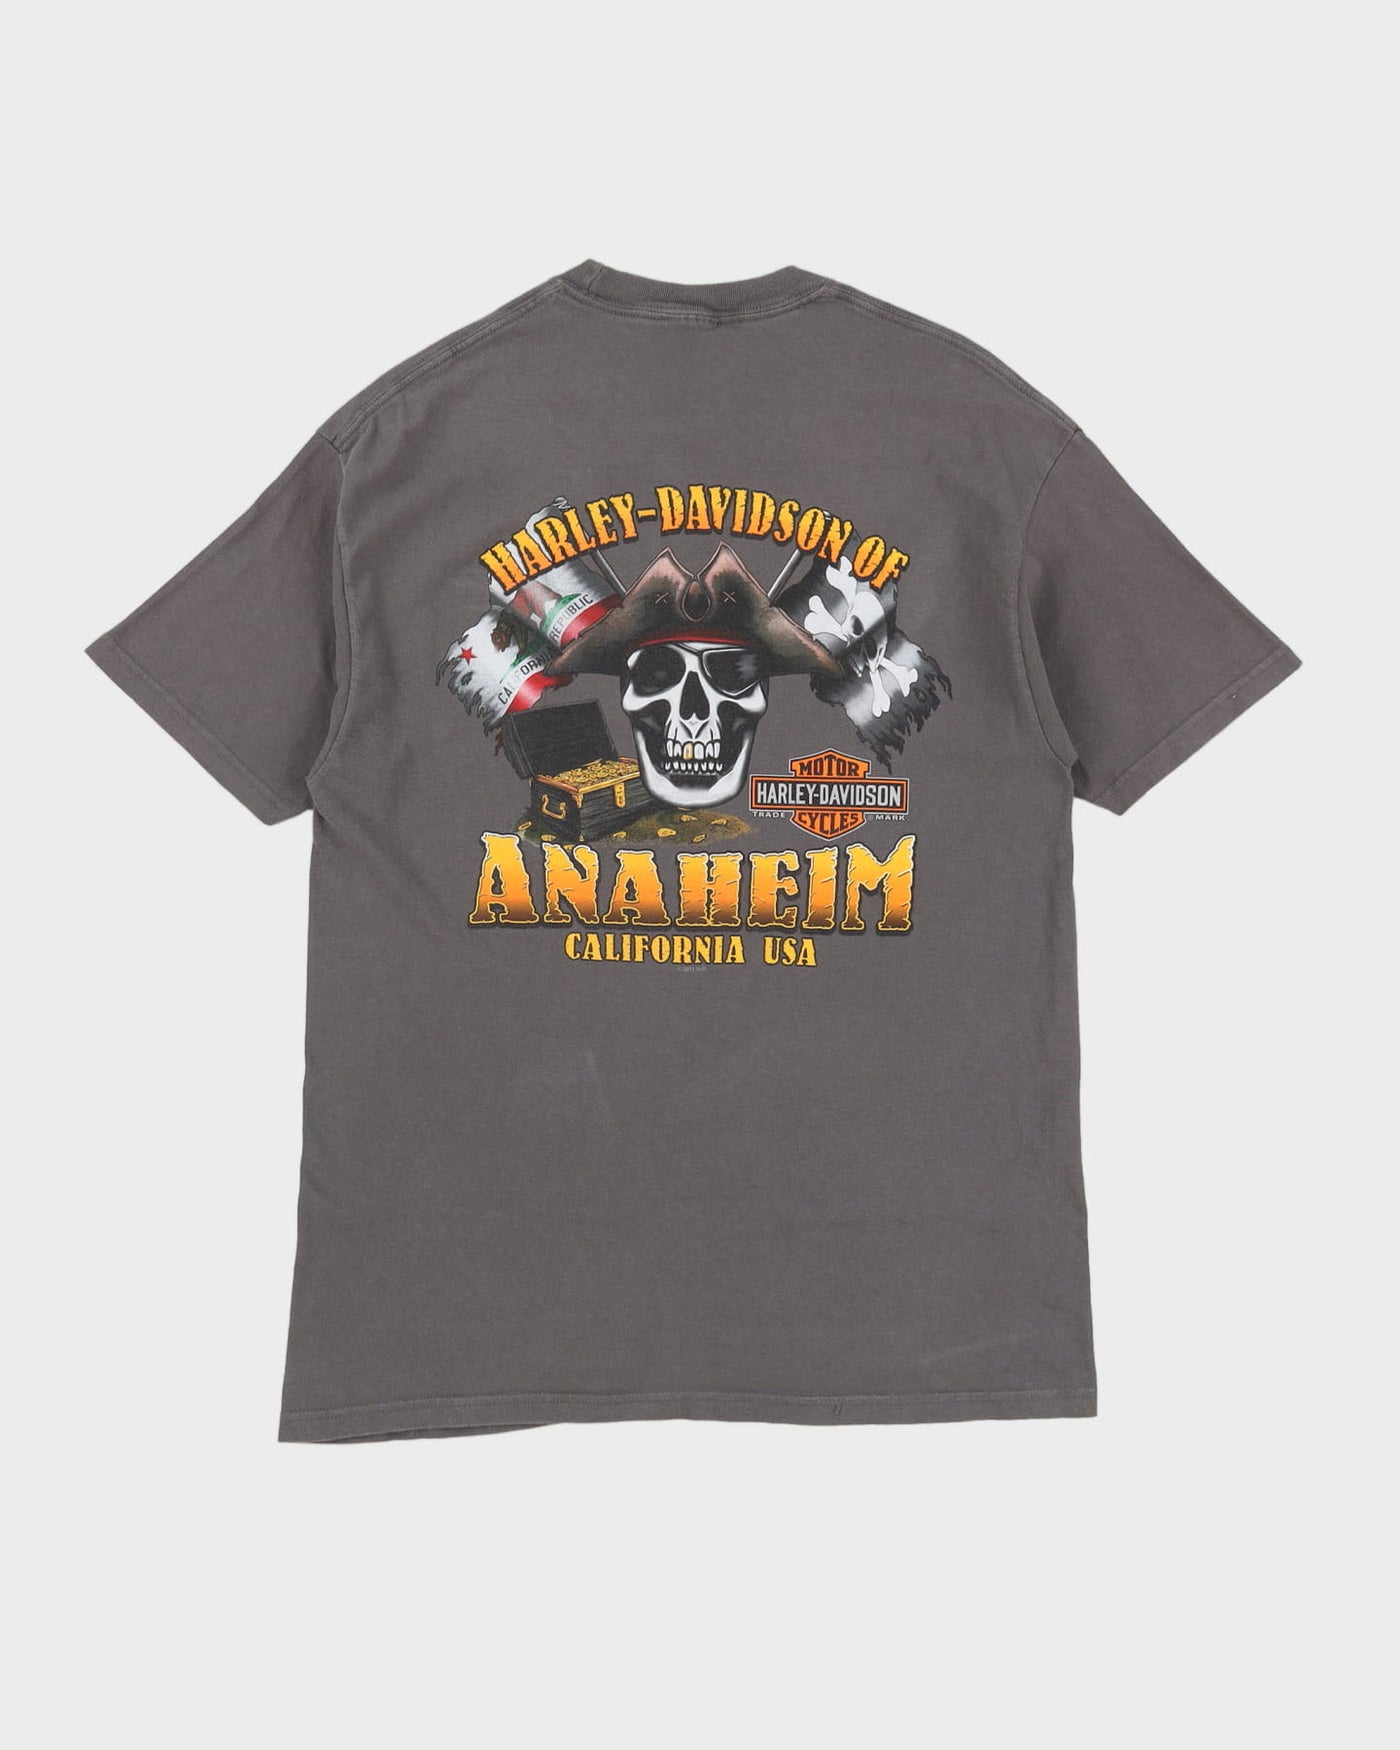 Harley Davidson Anaheim Skull Design Grey Graphic T-Shirt - S